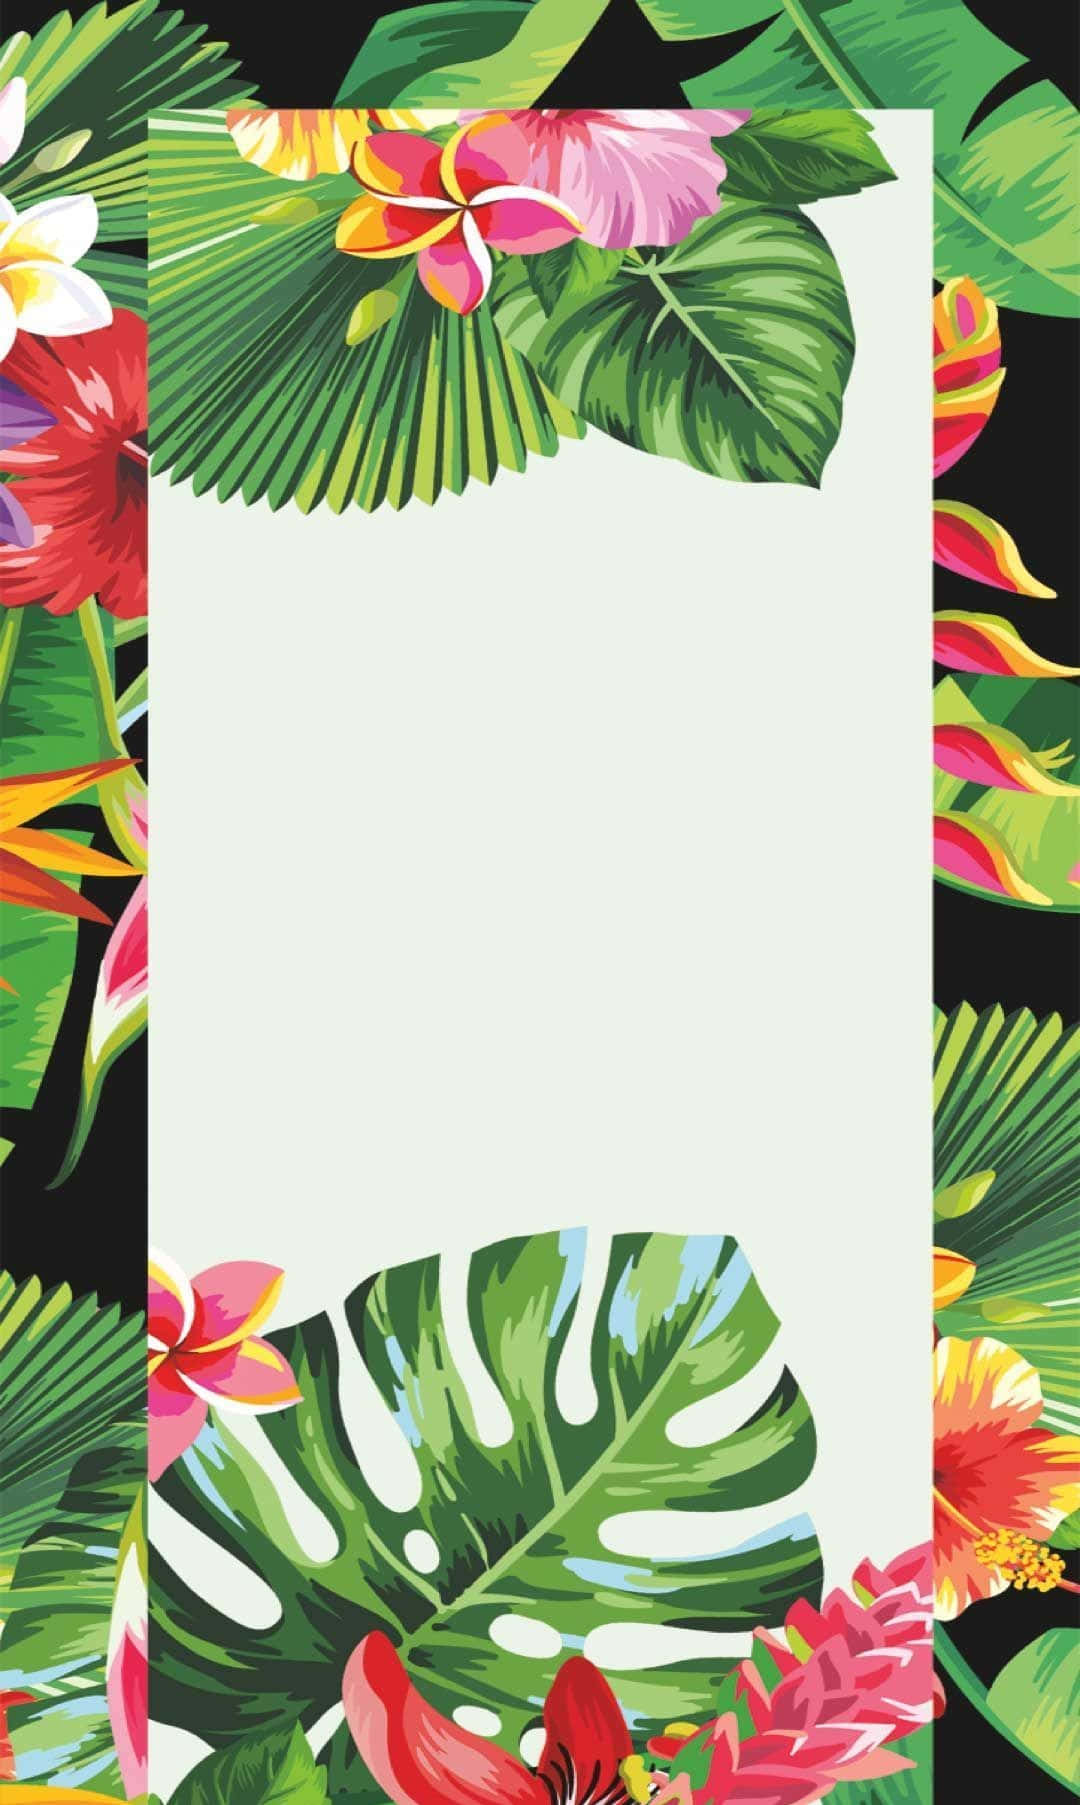 Einexotisches Tropisches Paradies Ist Eine Ästhetische Wahl Für Jedes Sommerabenteuer. Wallpaper